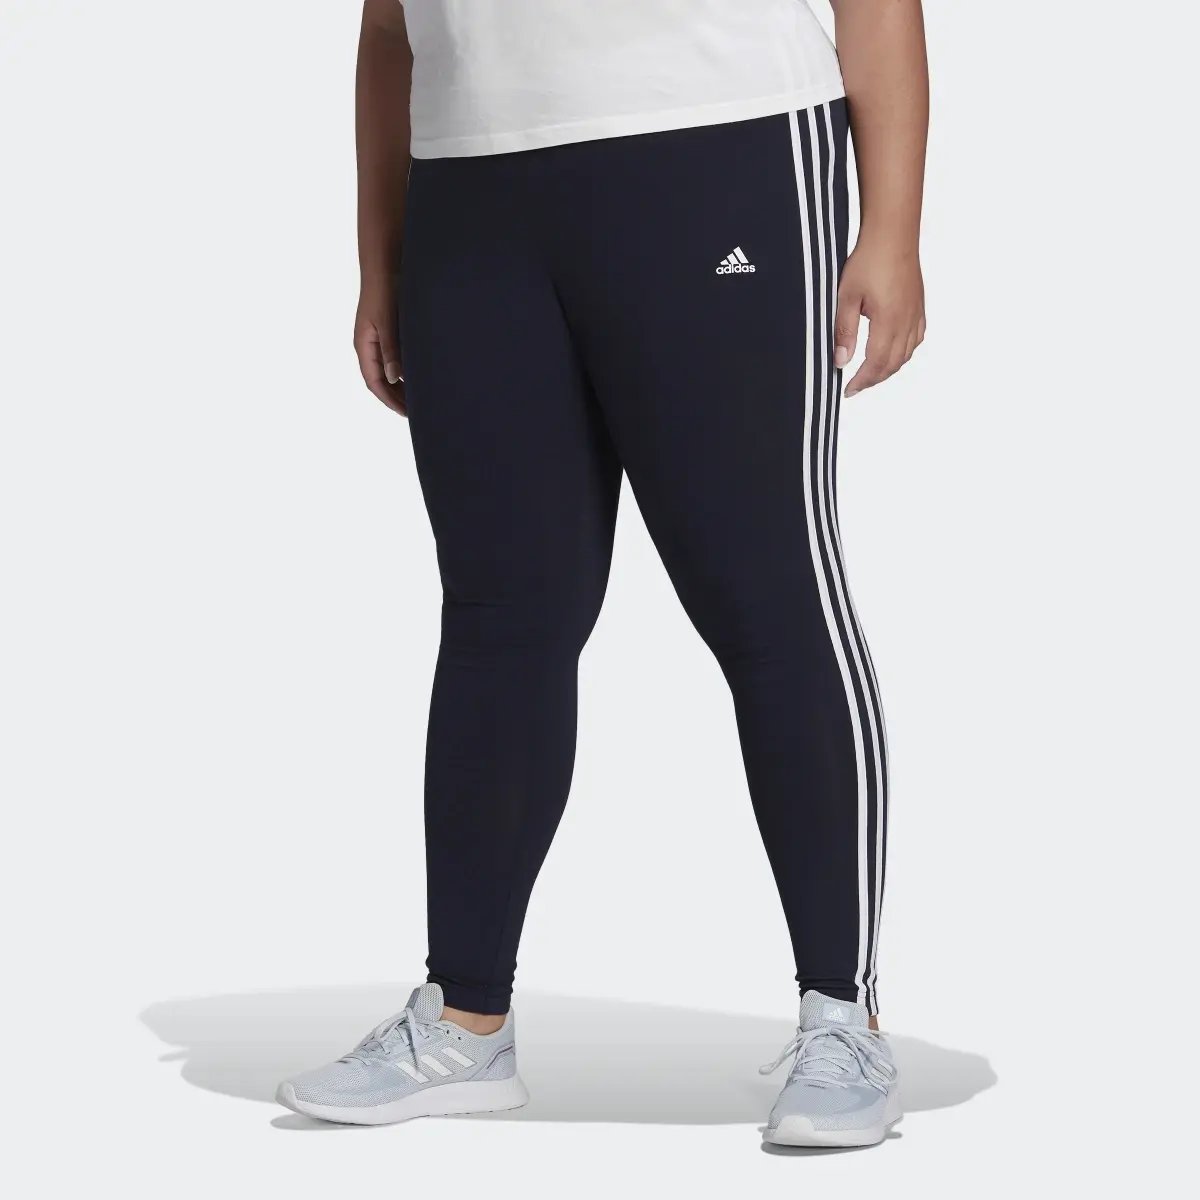 Adidas Essentials 3-Stripes Leggings (Plus Size). 1